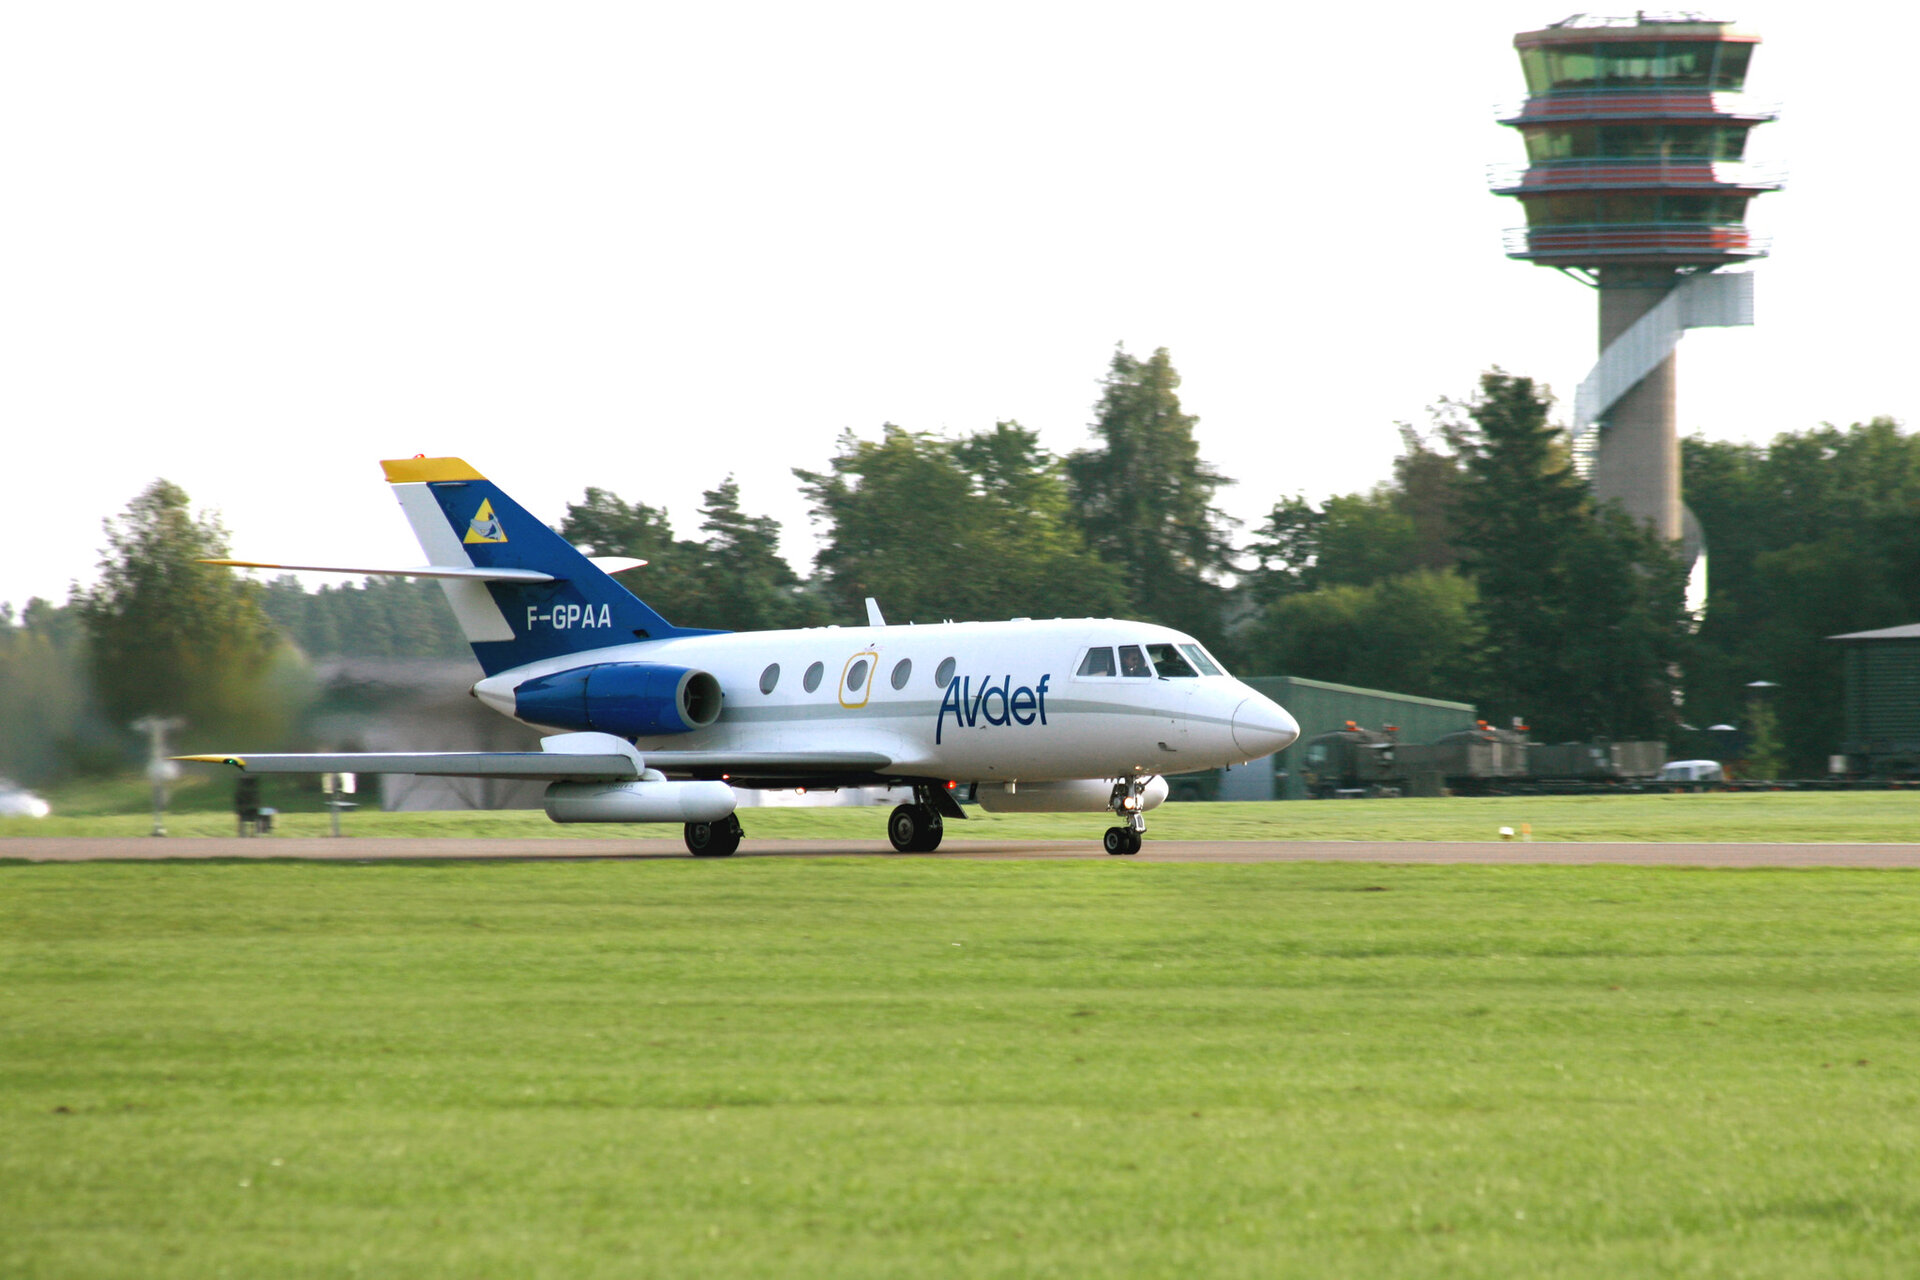 Aircraft carrying Sethi SAR system